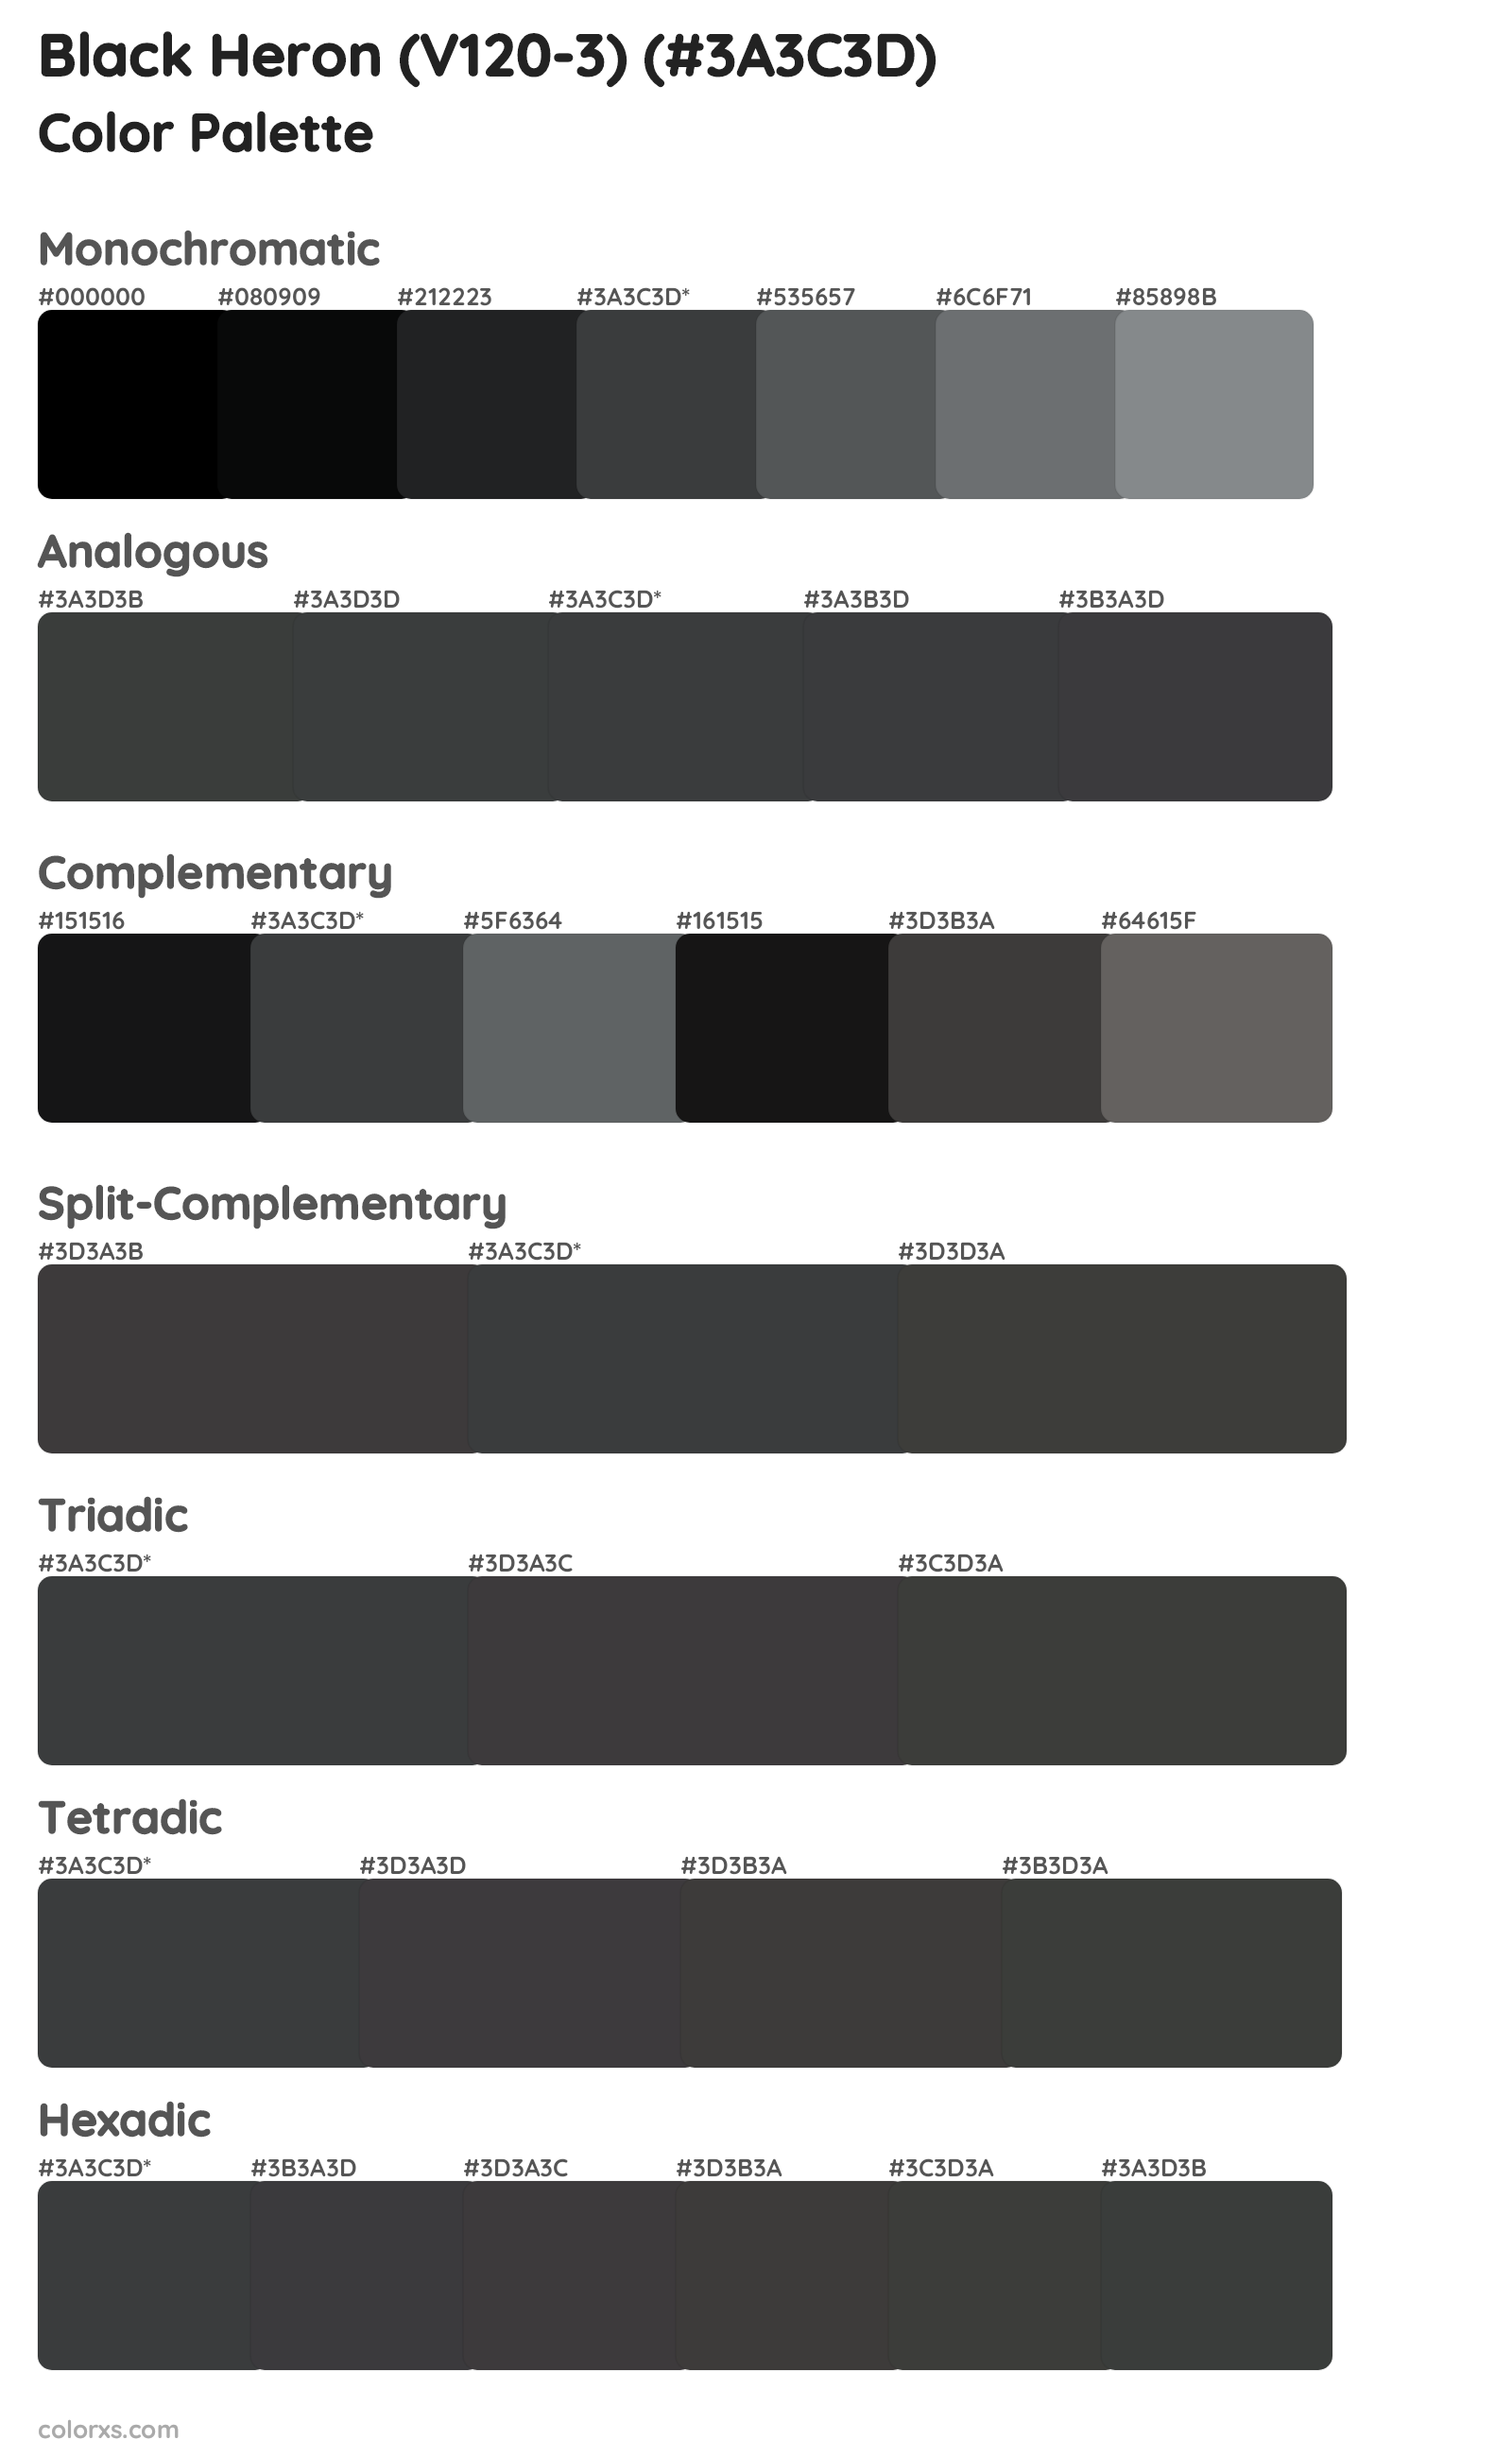 Black Heron (V120-3) Color Scheme Palettes